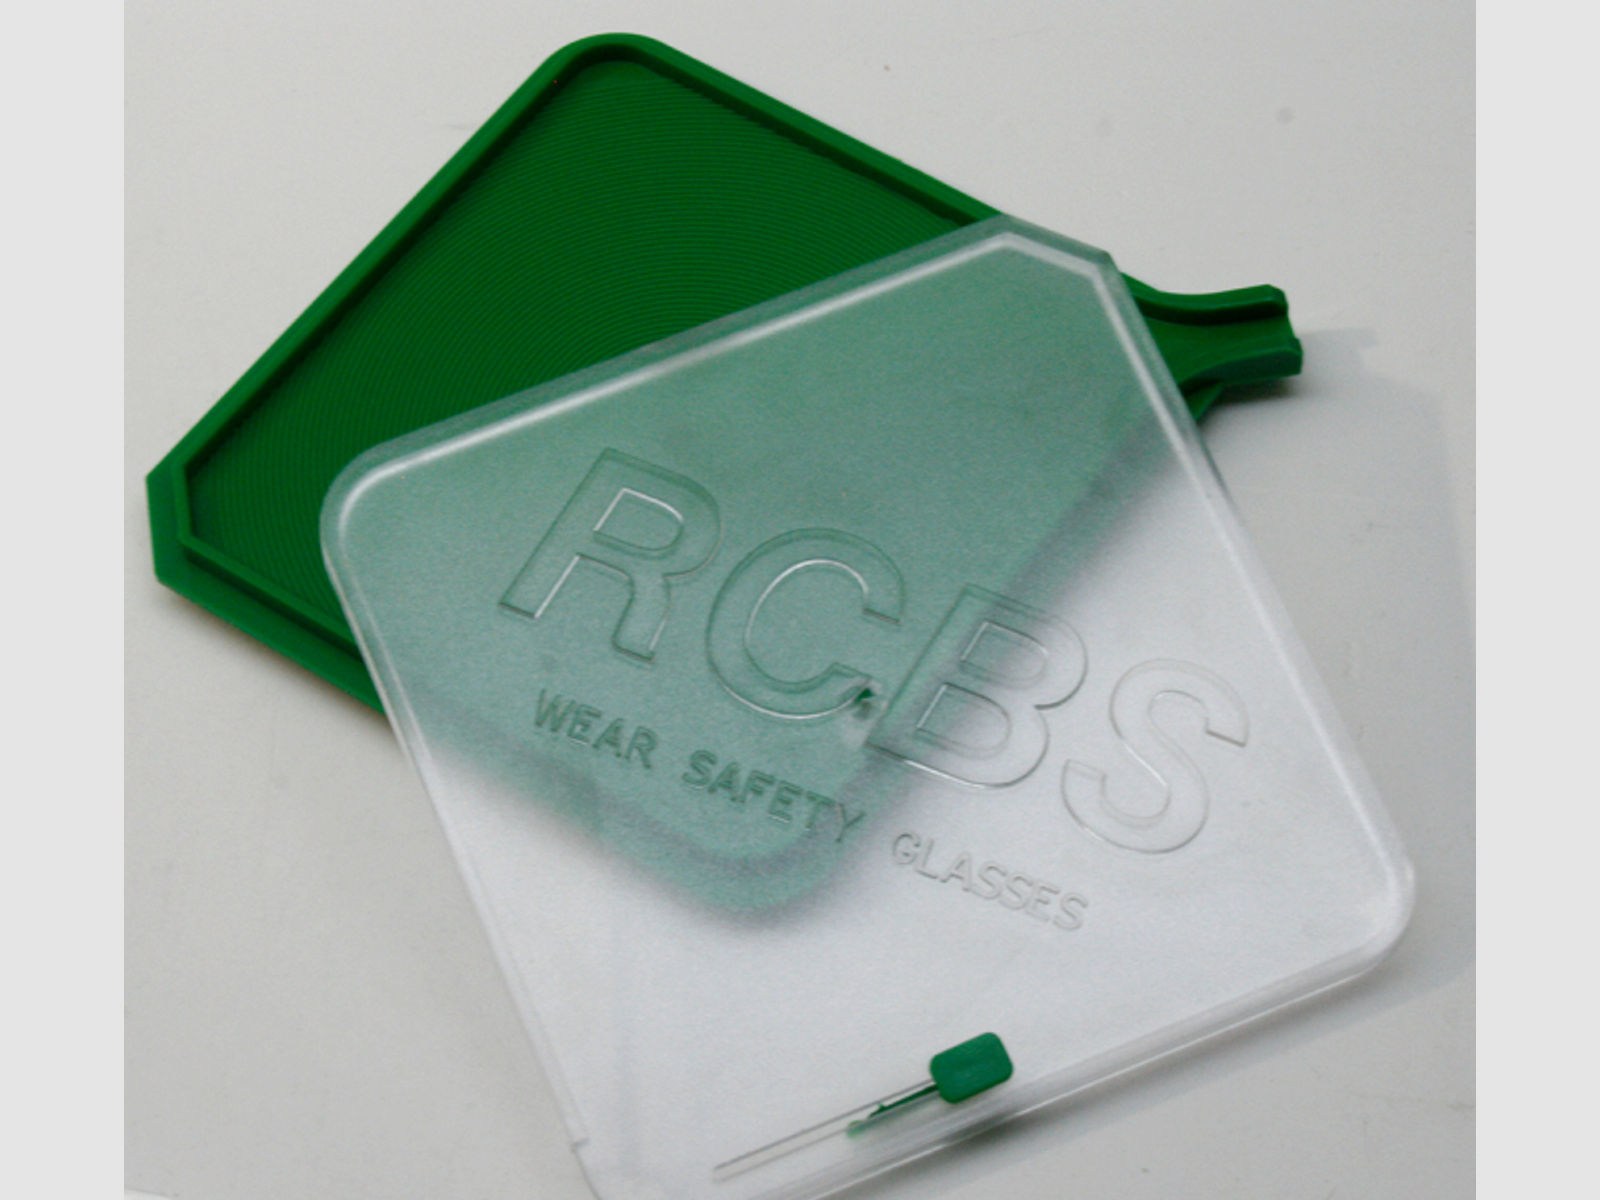 RCBS 90202 Universal Hand Priming Tool Tray & Deckel | Ersatzteil für RCBS Zünder-Setzgerät #90200